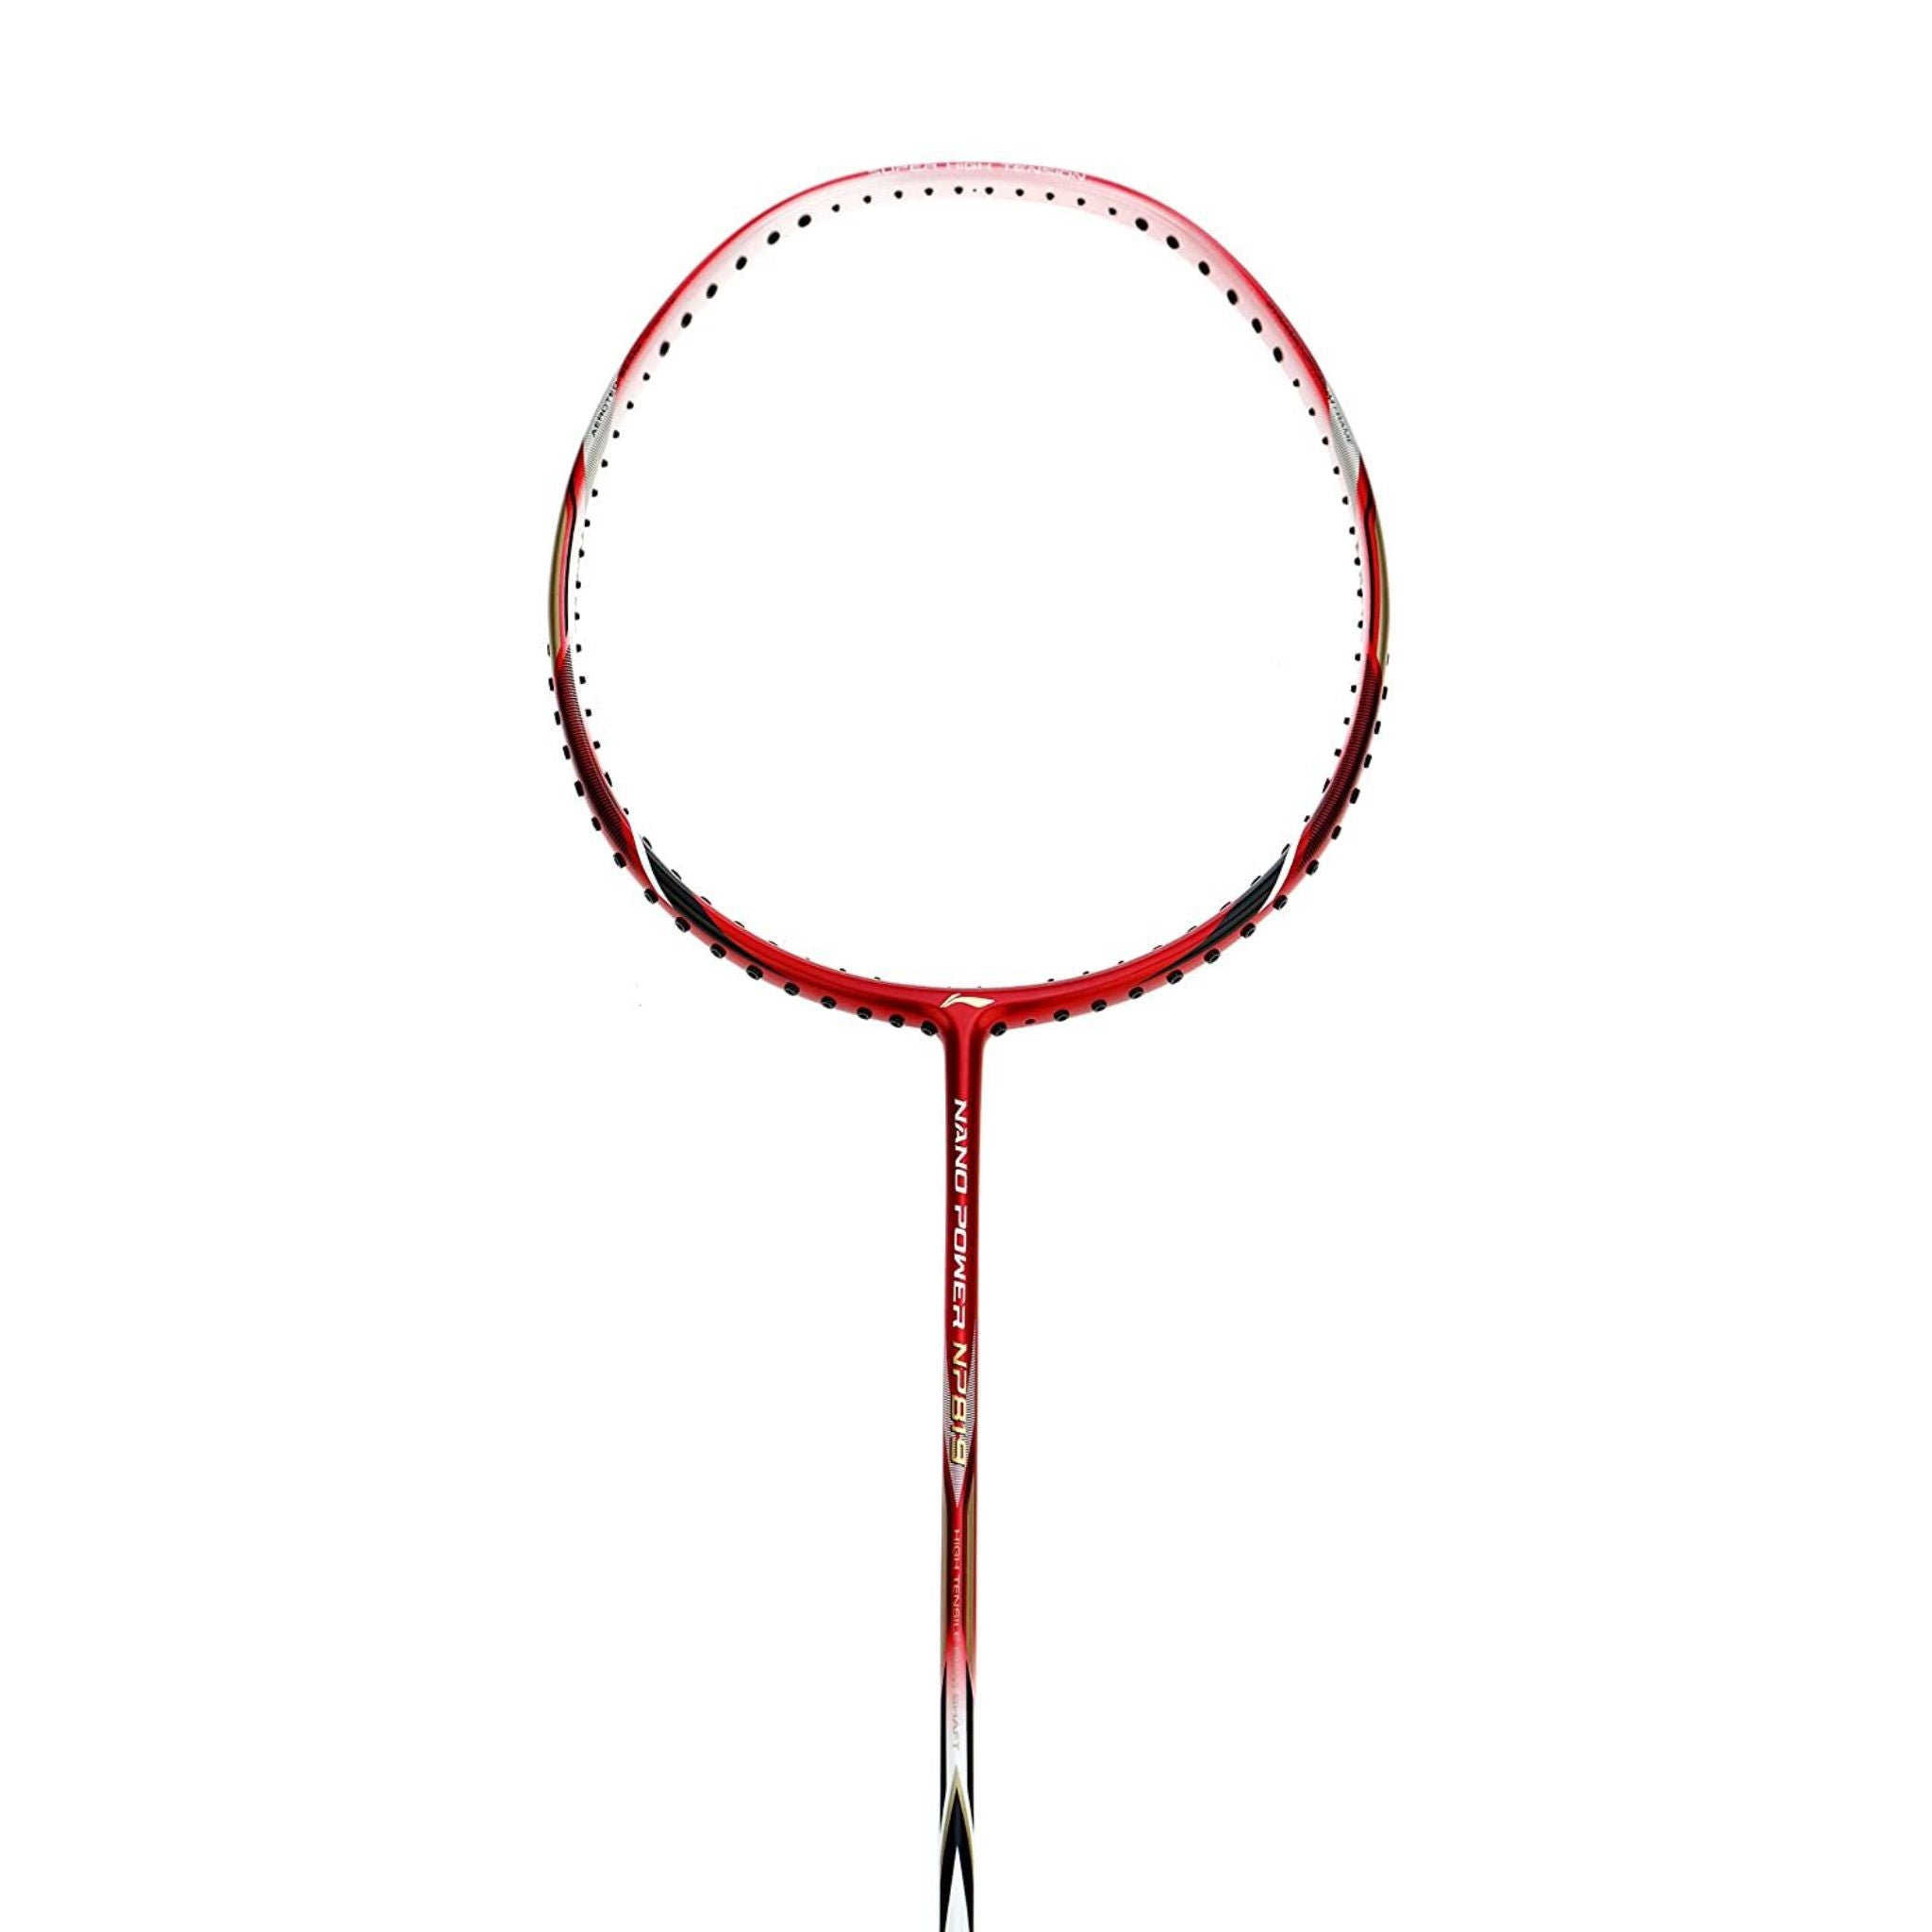 LI-NING Nano Power NP 819 Badminton Racquet